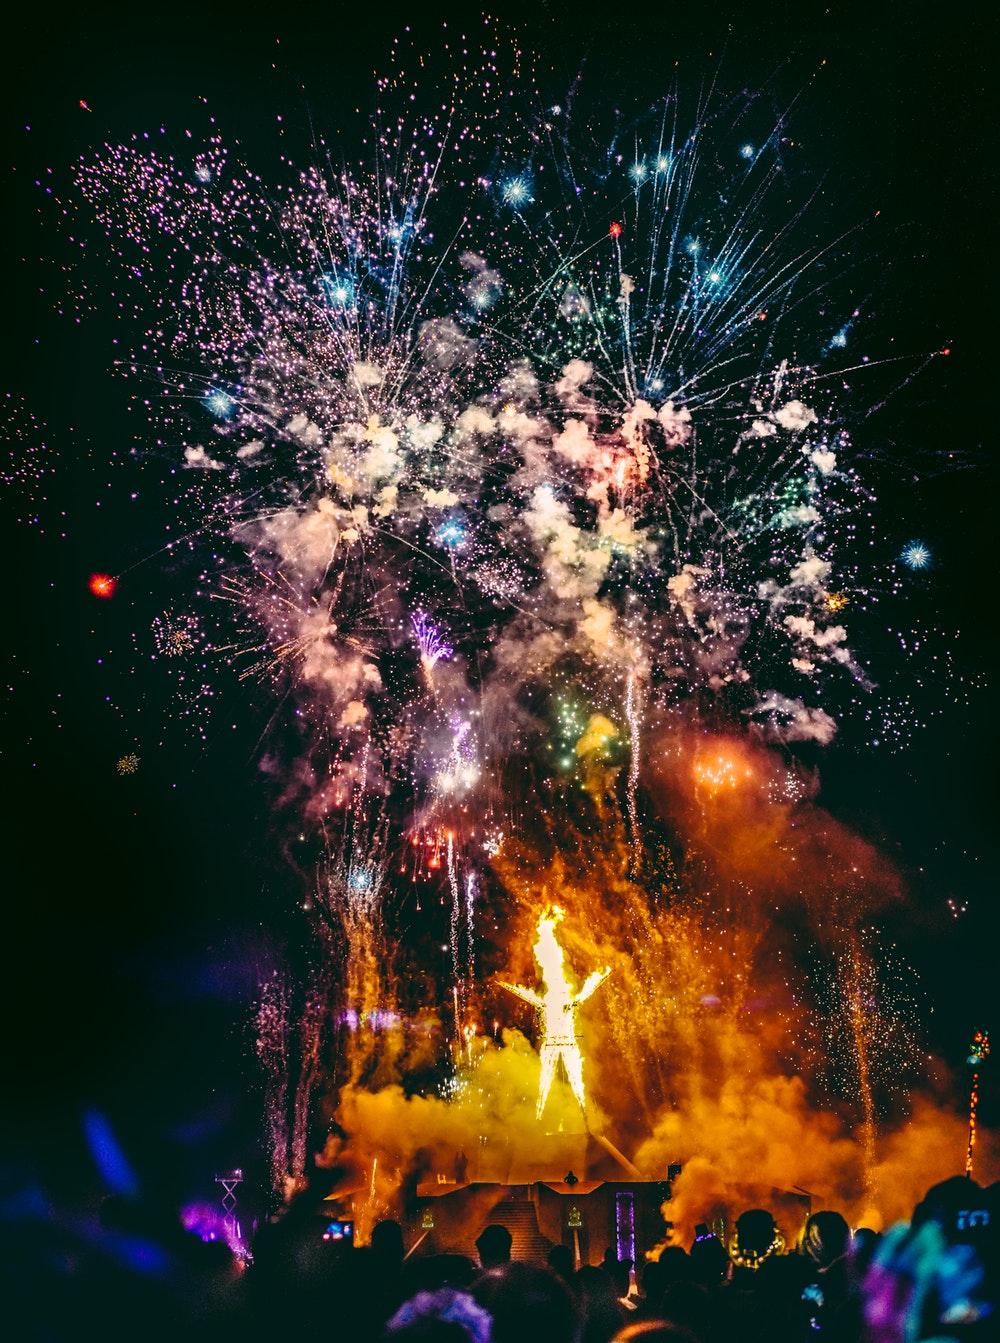 Burning Man Picture. Download Free Image